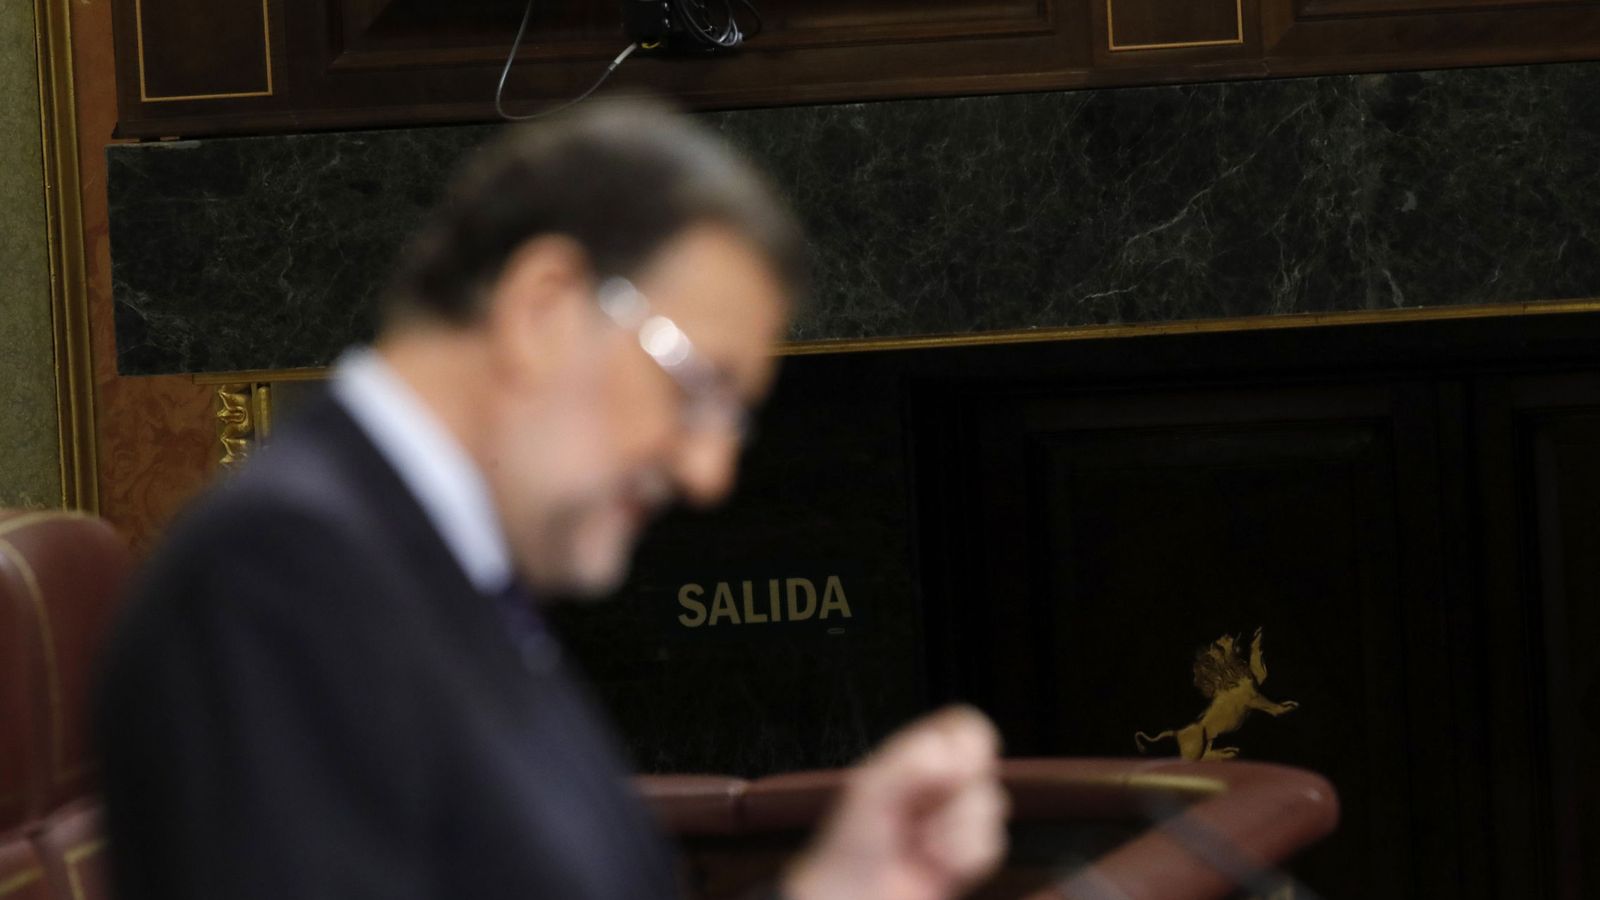 Foto: El presidente del Gobierno en funciones, Mariano Rajoy, durante su intervención en la tercera sesión del debate de su investidura. (EFE)